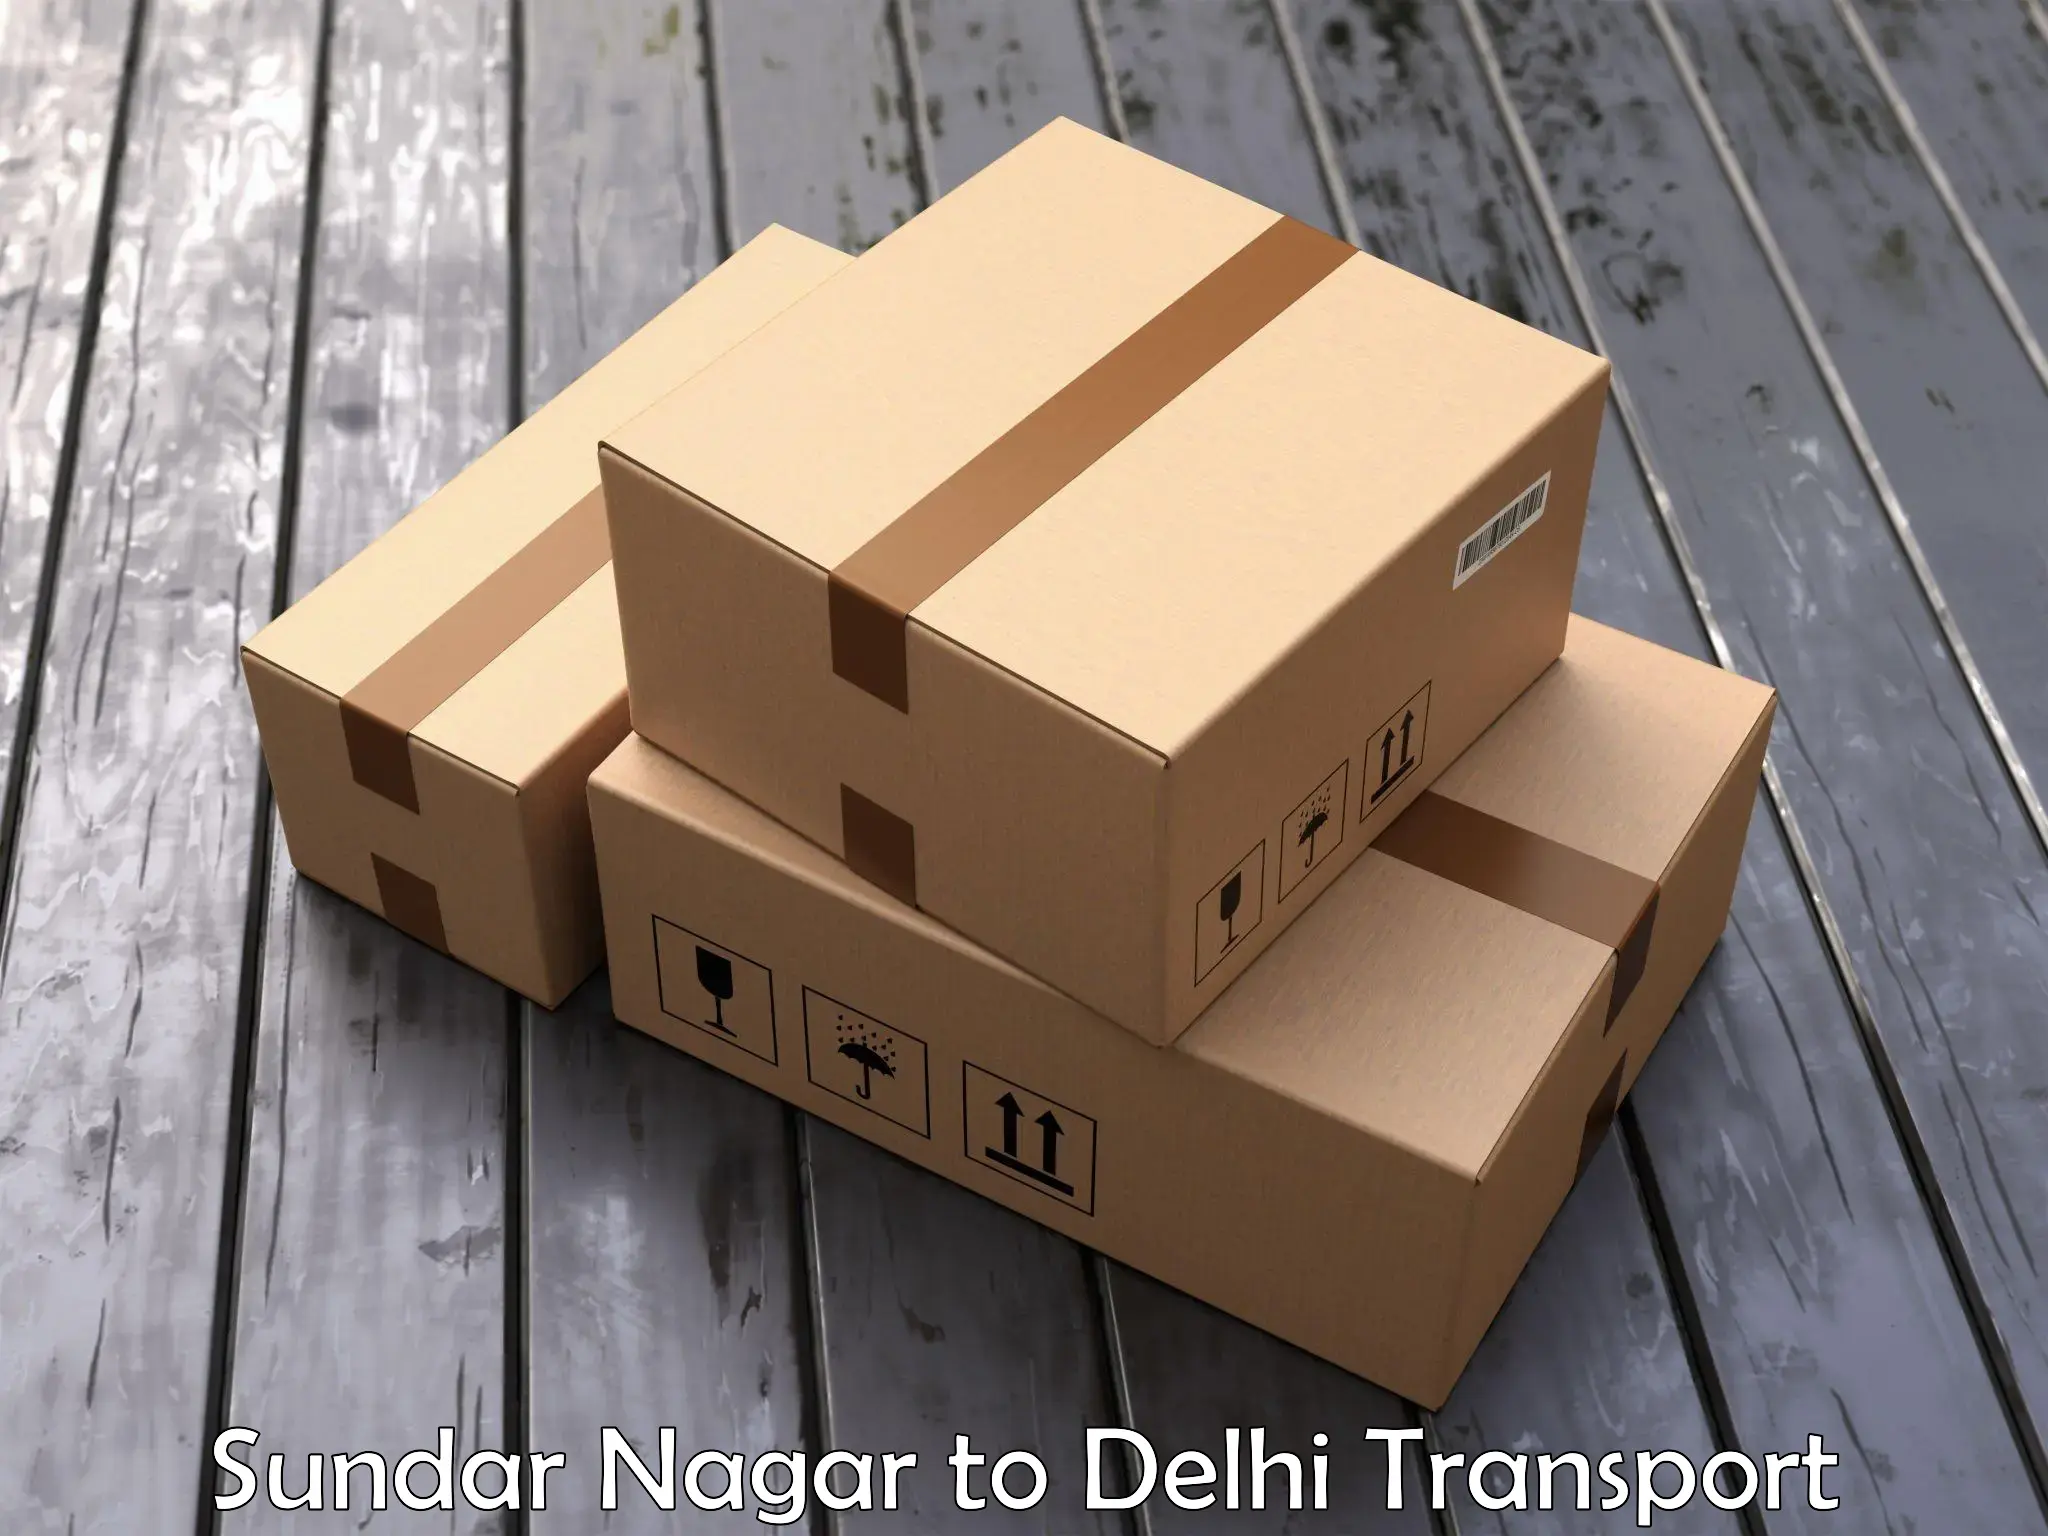 Pick up transport service Sundar Nagar to Delhi